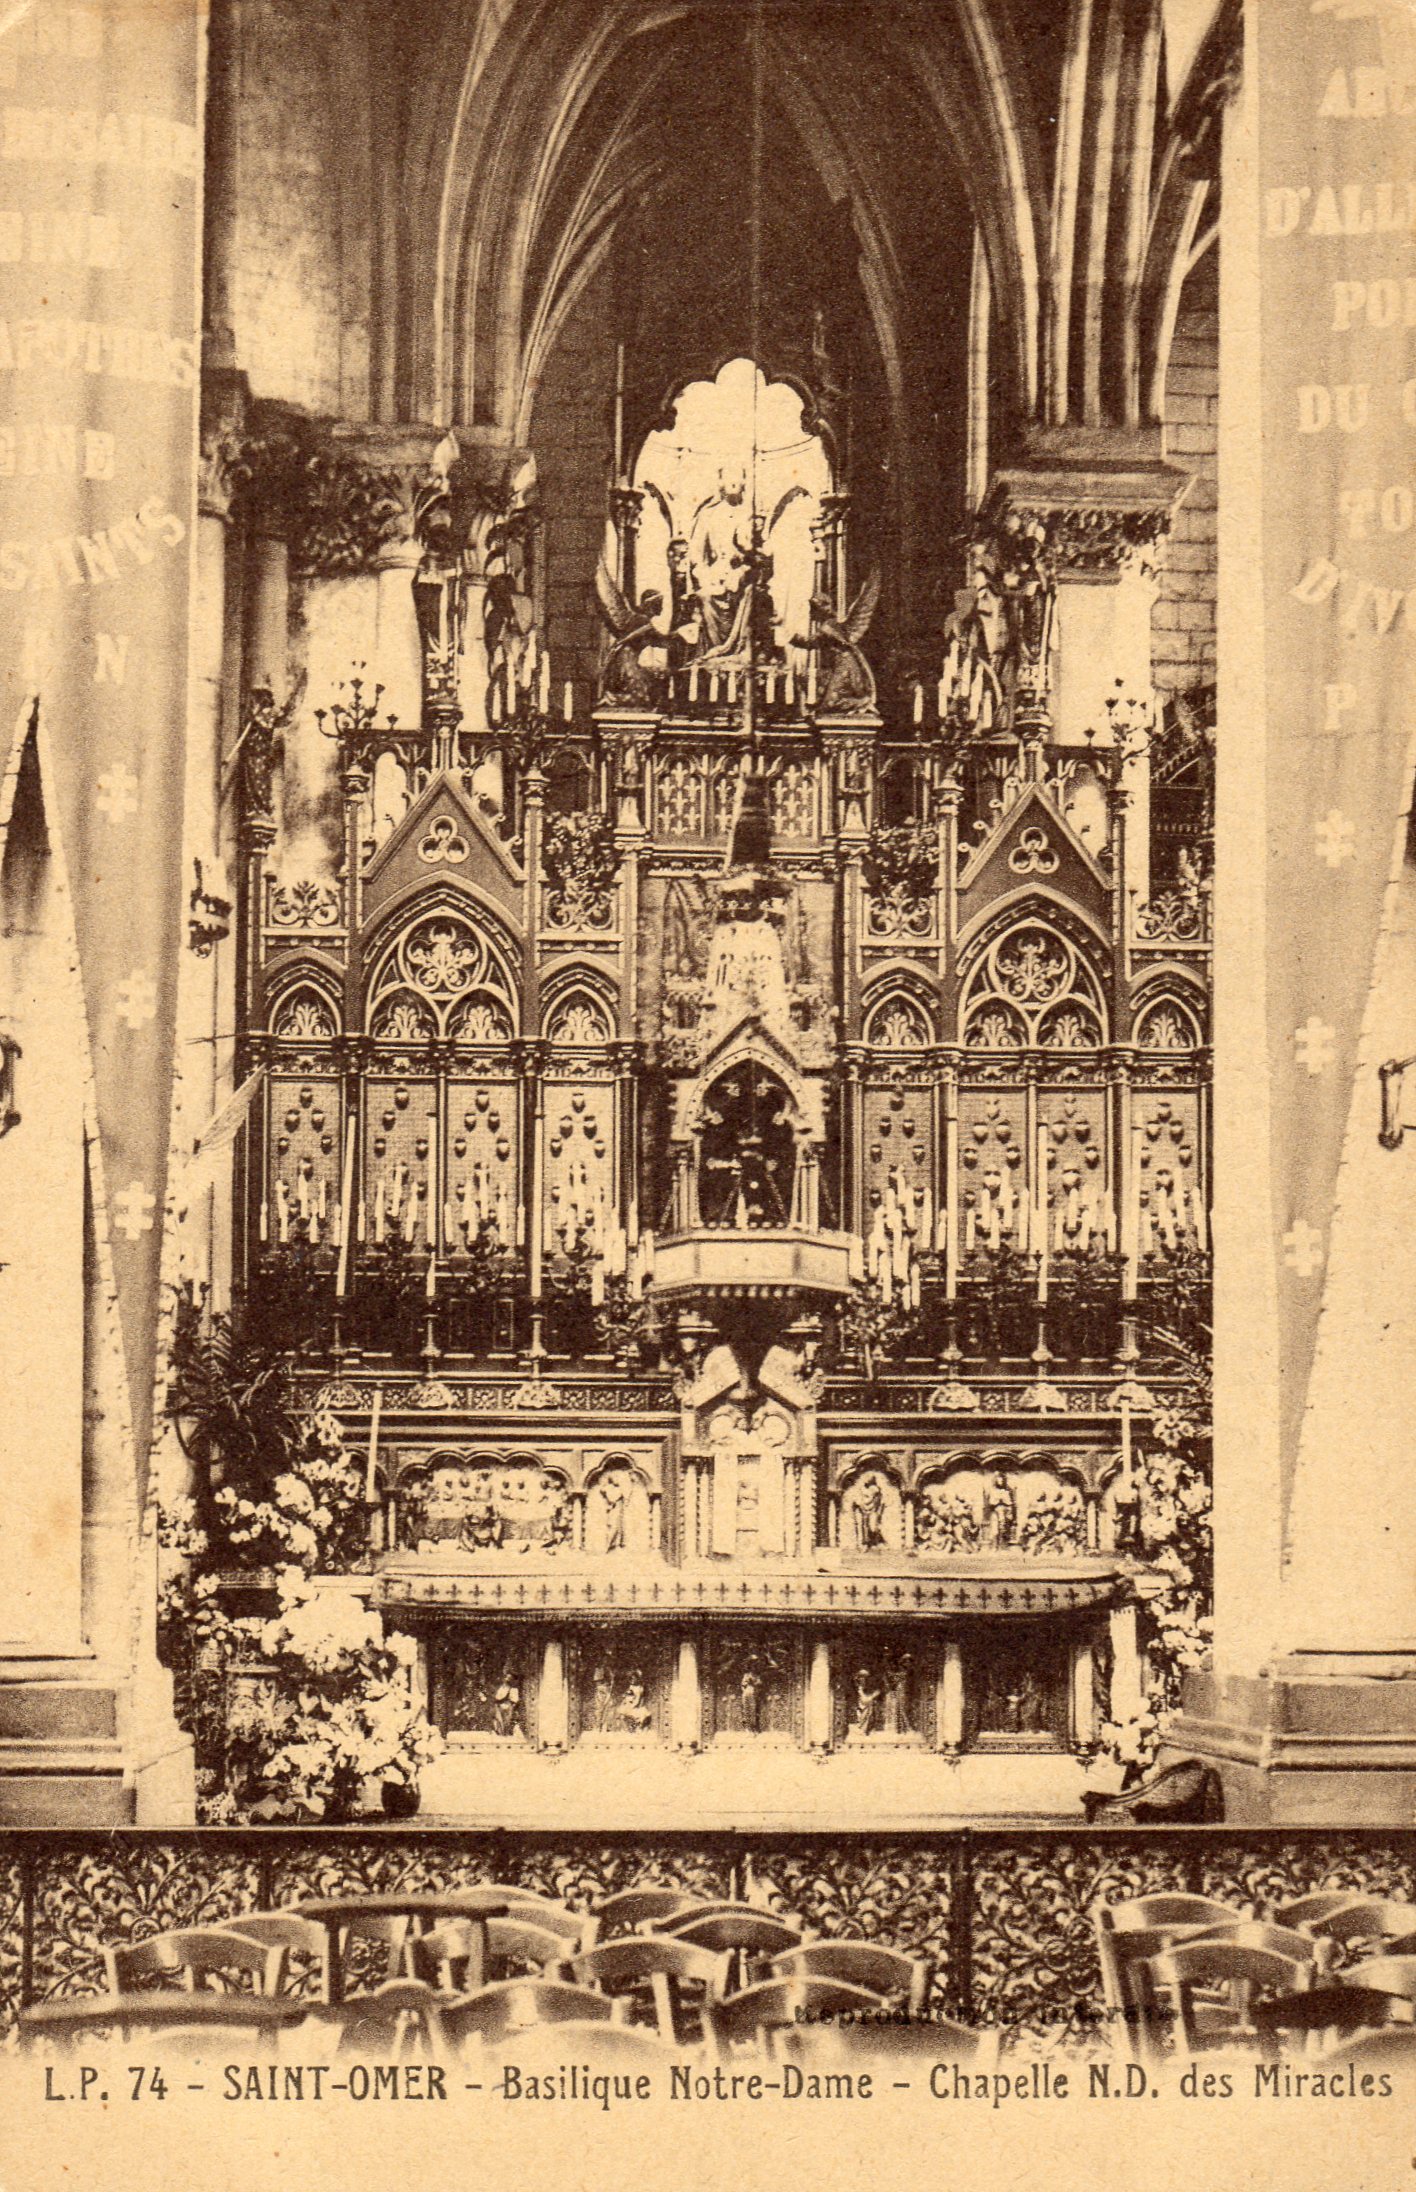 Cet autel dédié à Notre Dame des Miracles se situe dans le transept mystique, on peut voir sur les murs tout autour les nombreux ex-votos en remerciement de nombreux miracles.